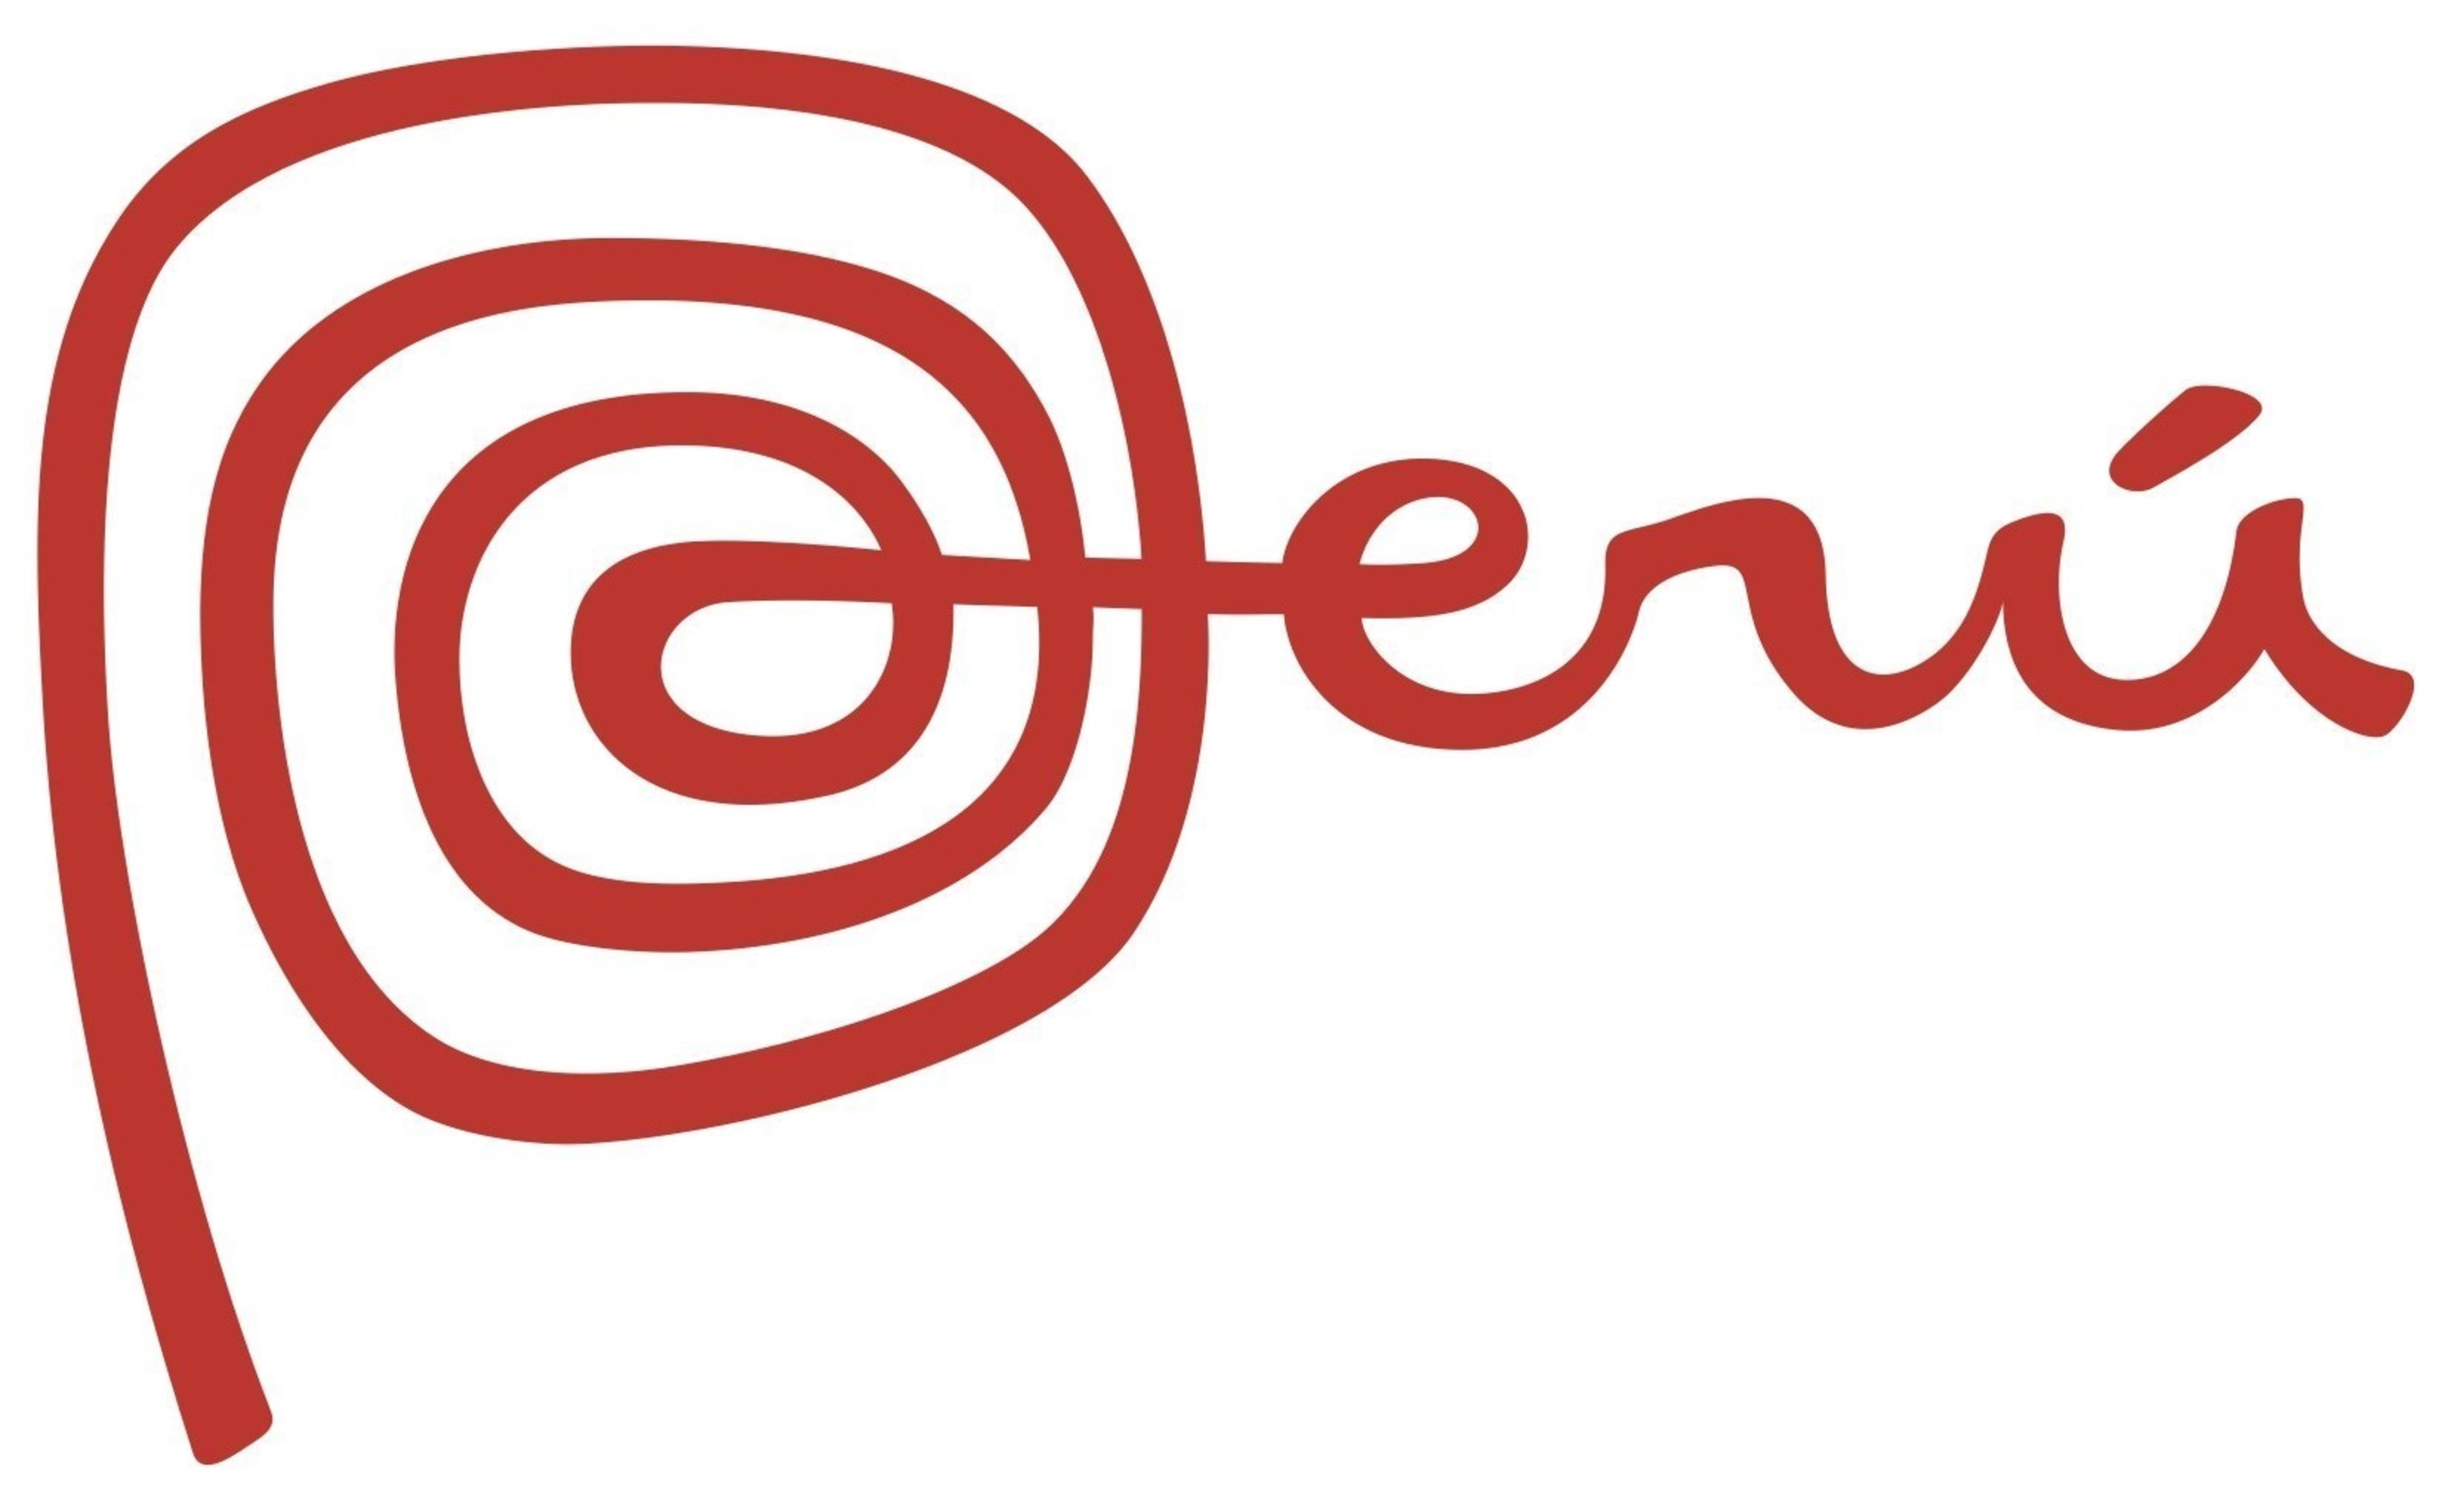 PERU master logo